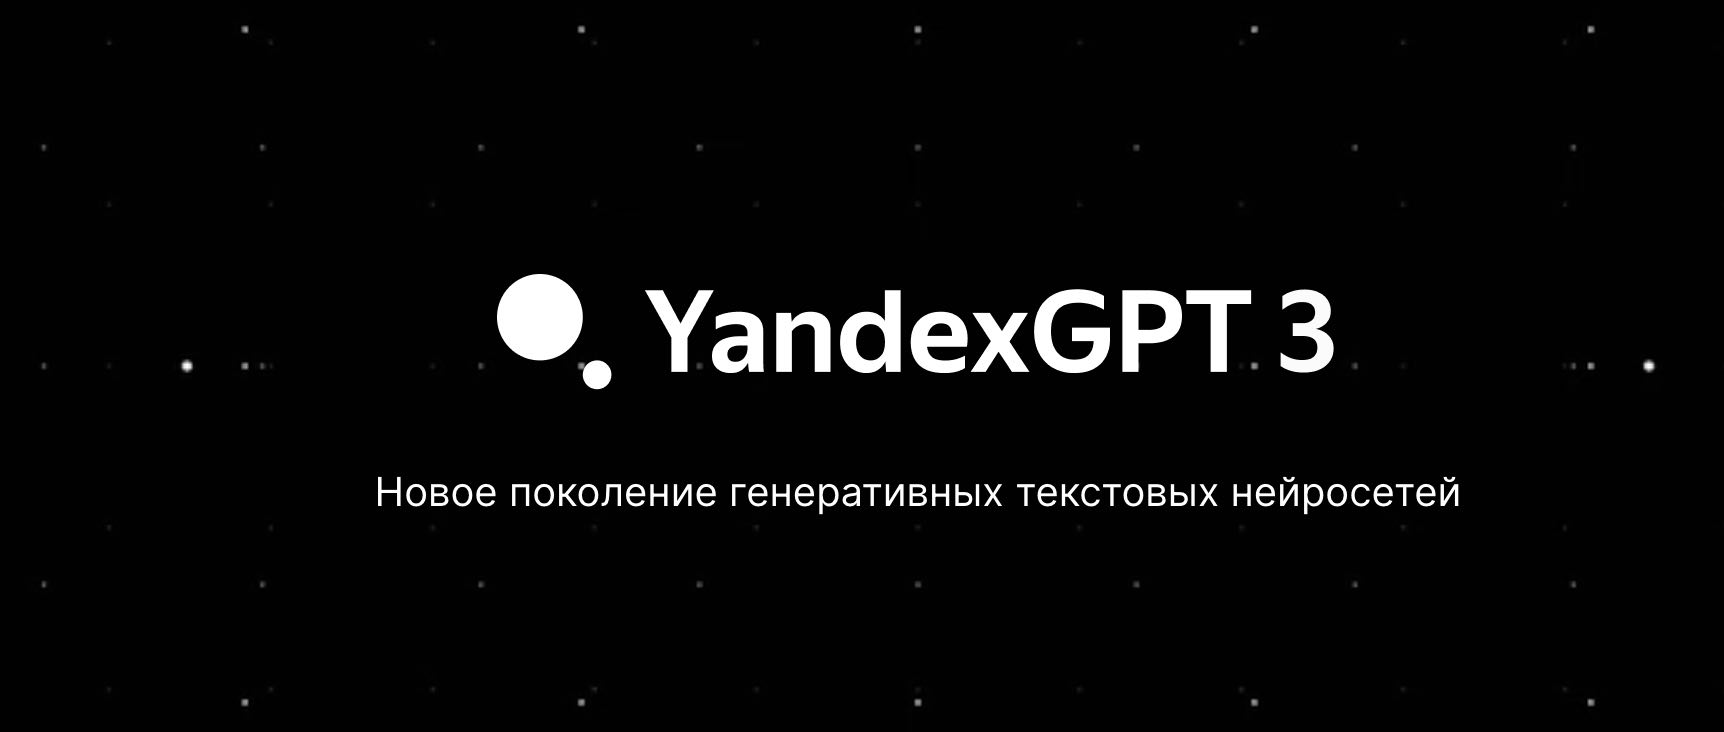 Новая версия ИИ GPT 3 Pro от Yandex улучшила значения до 63%